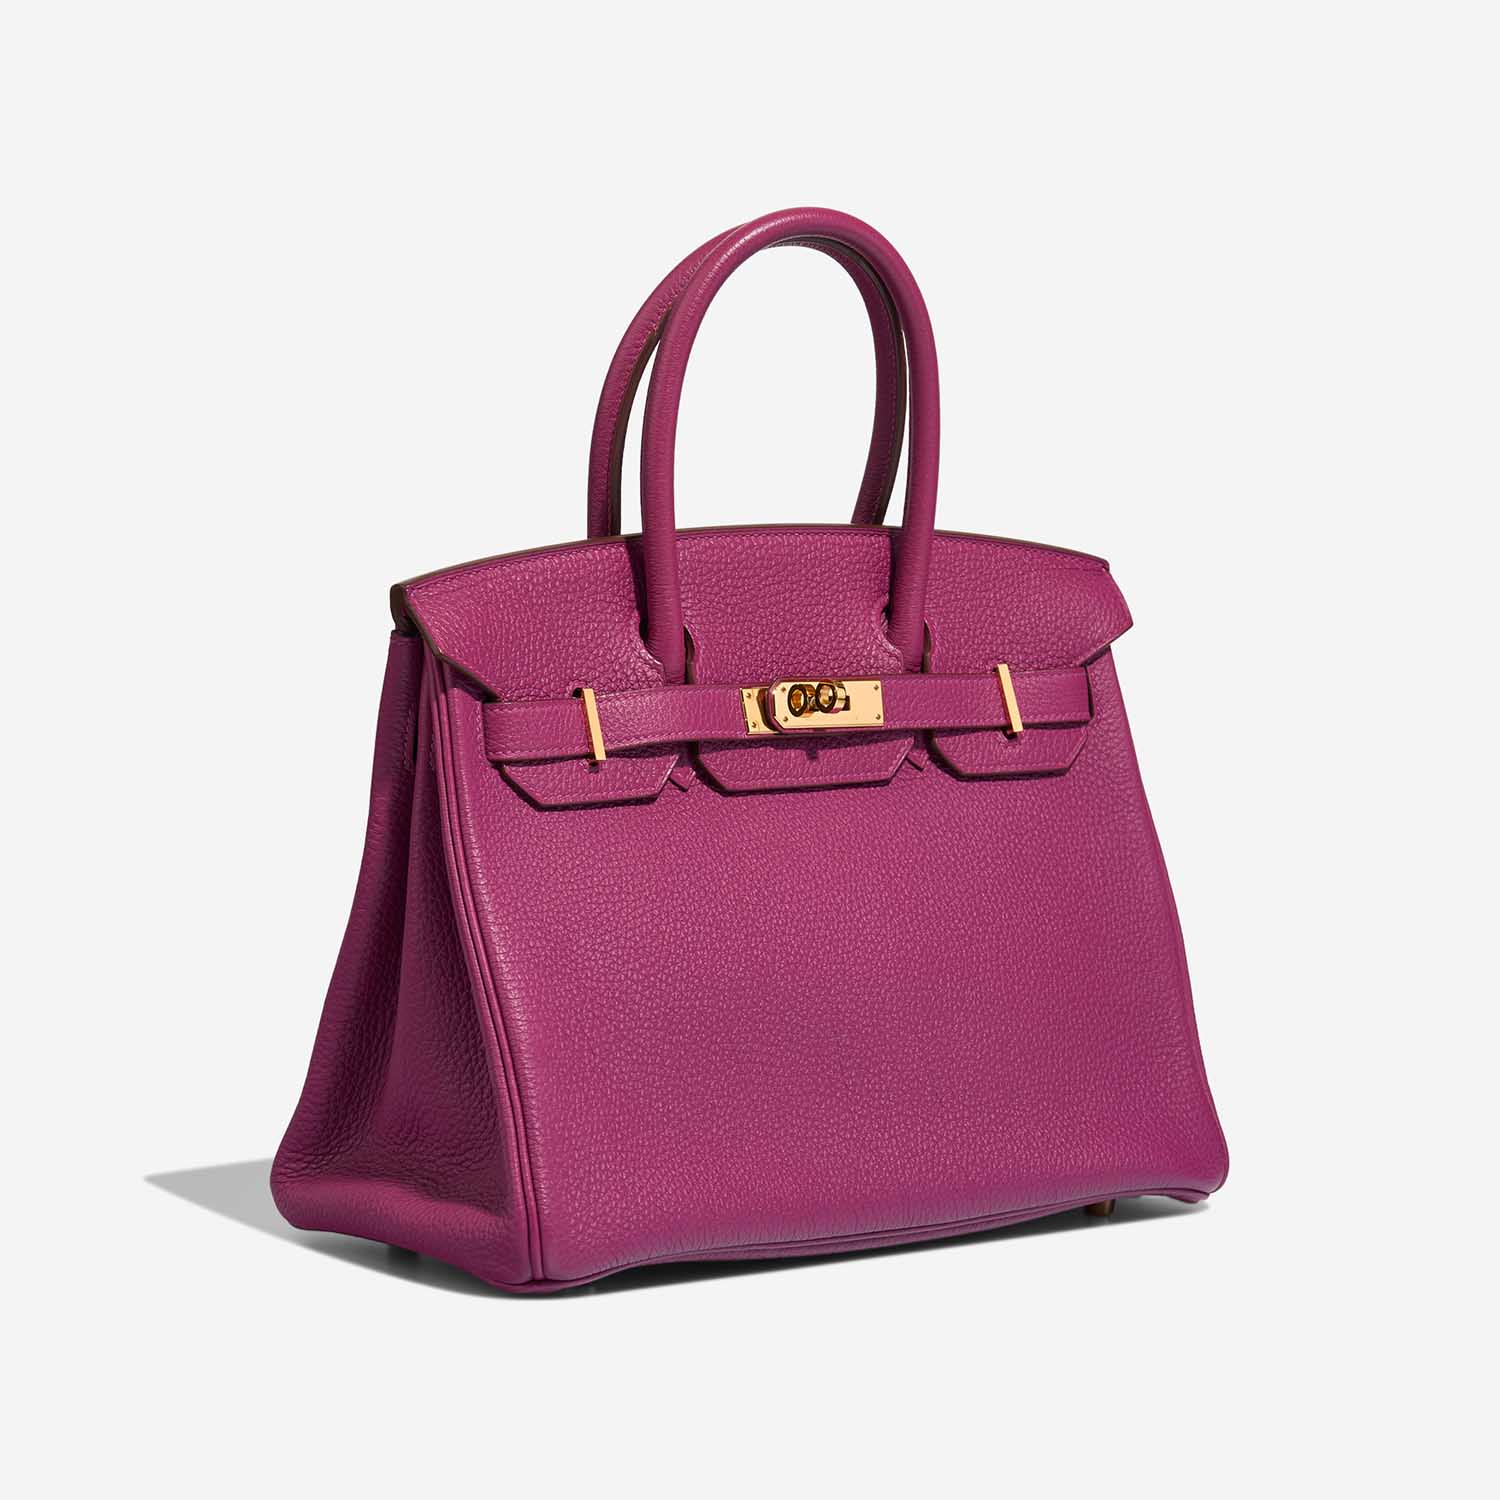 Hermès Birkin 30 Tosca Side Front | Verkaufen Sie Ihre Designer-Tasche auf Saclab.com